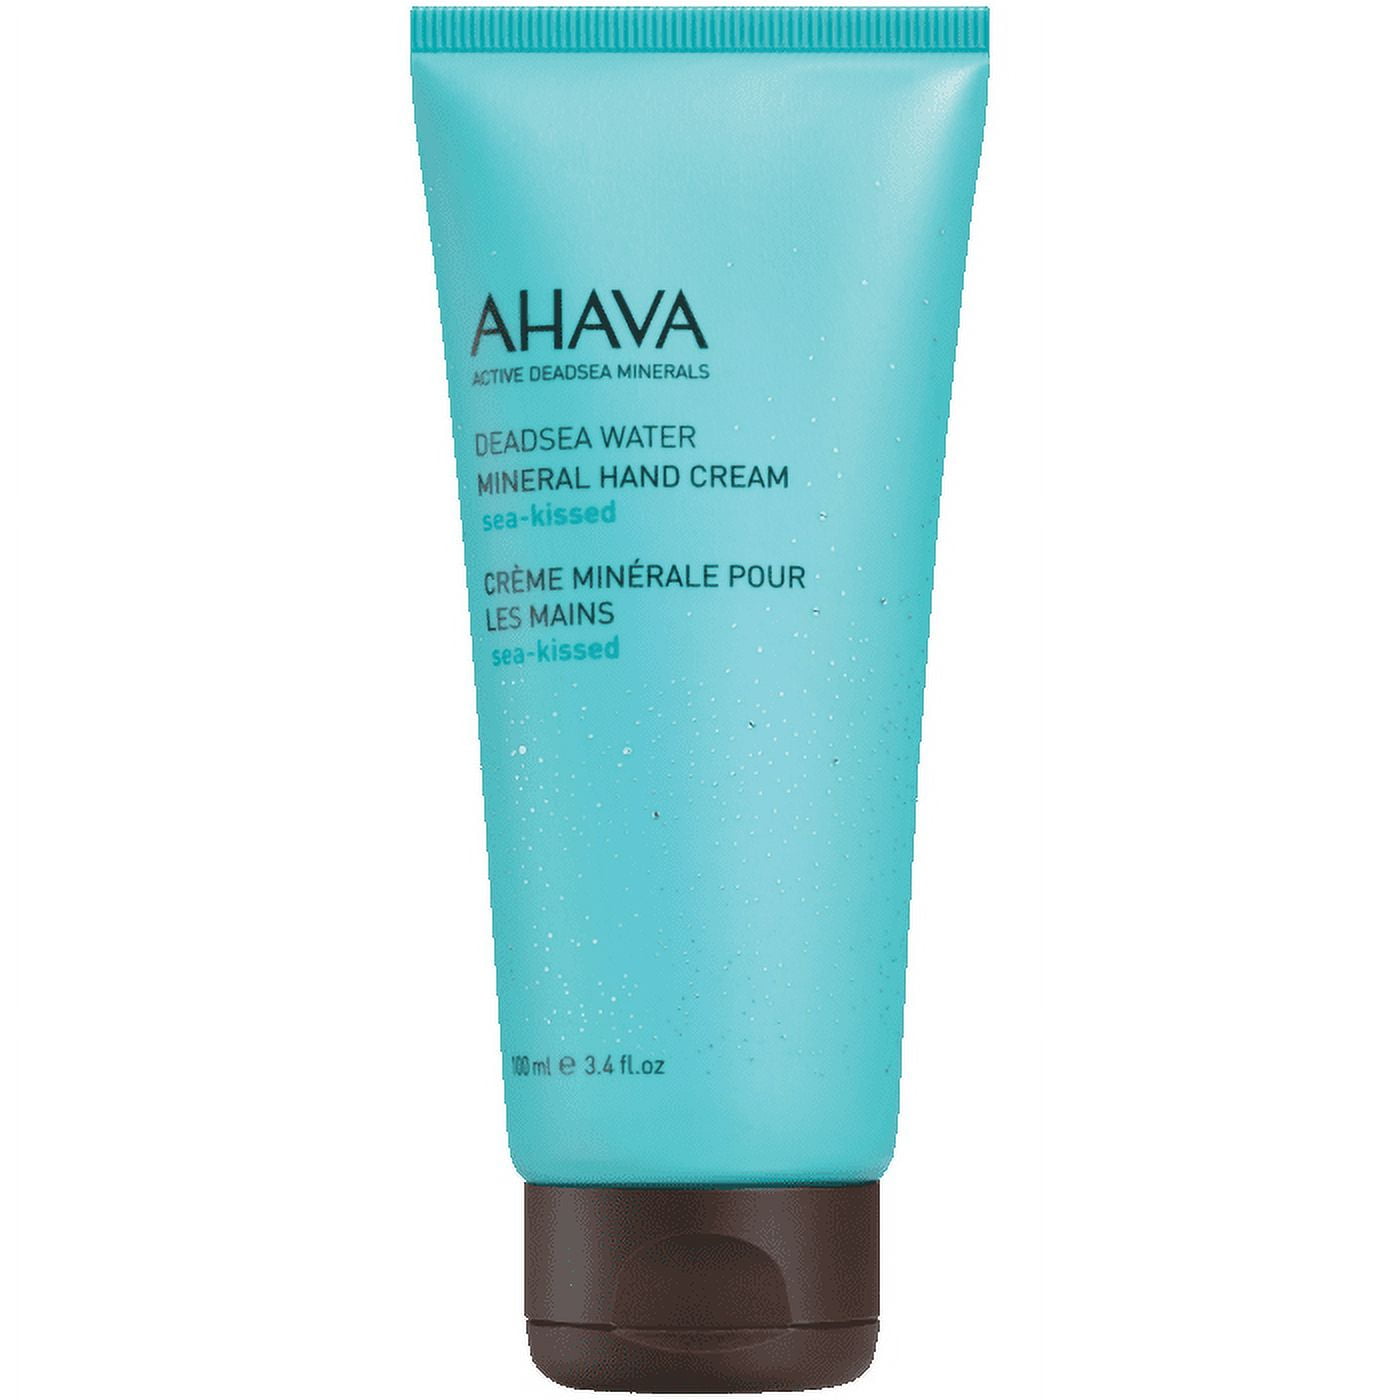 Ahava leave-on deadsea mud ml 3.4 / oz dermud intensive 100 cream hand